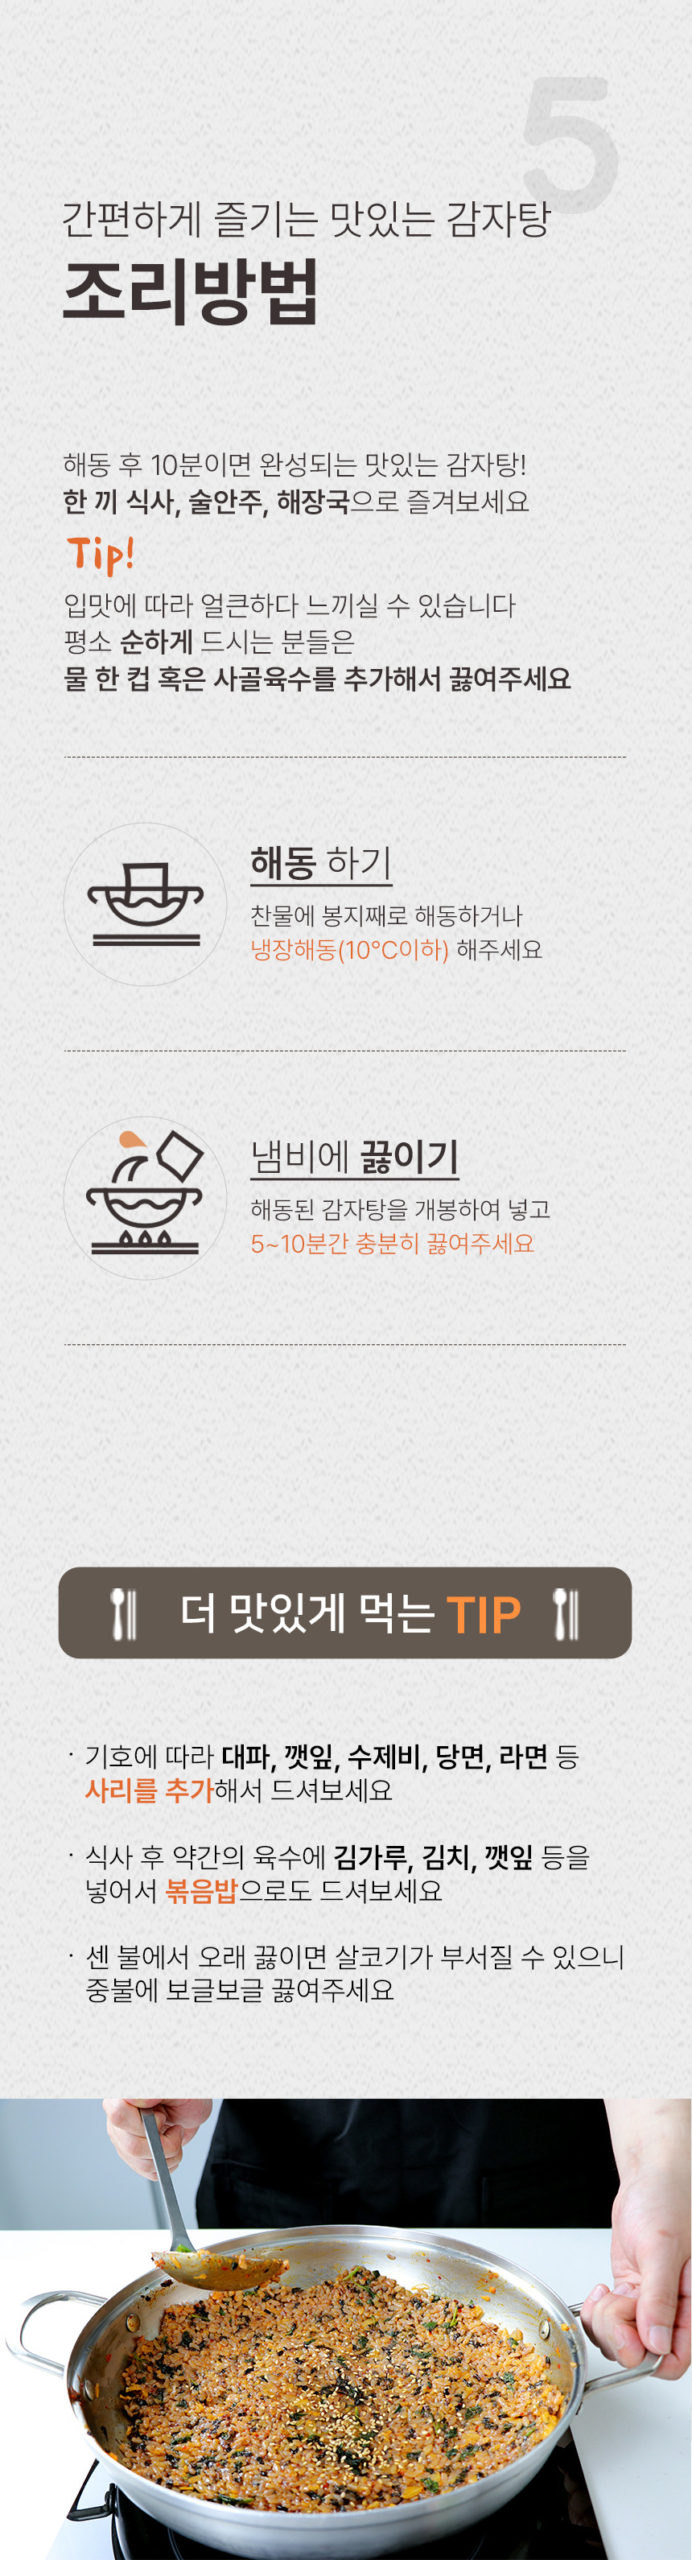 韓國食品-[남다른] 순살 감자탕 600g